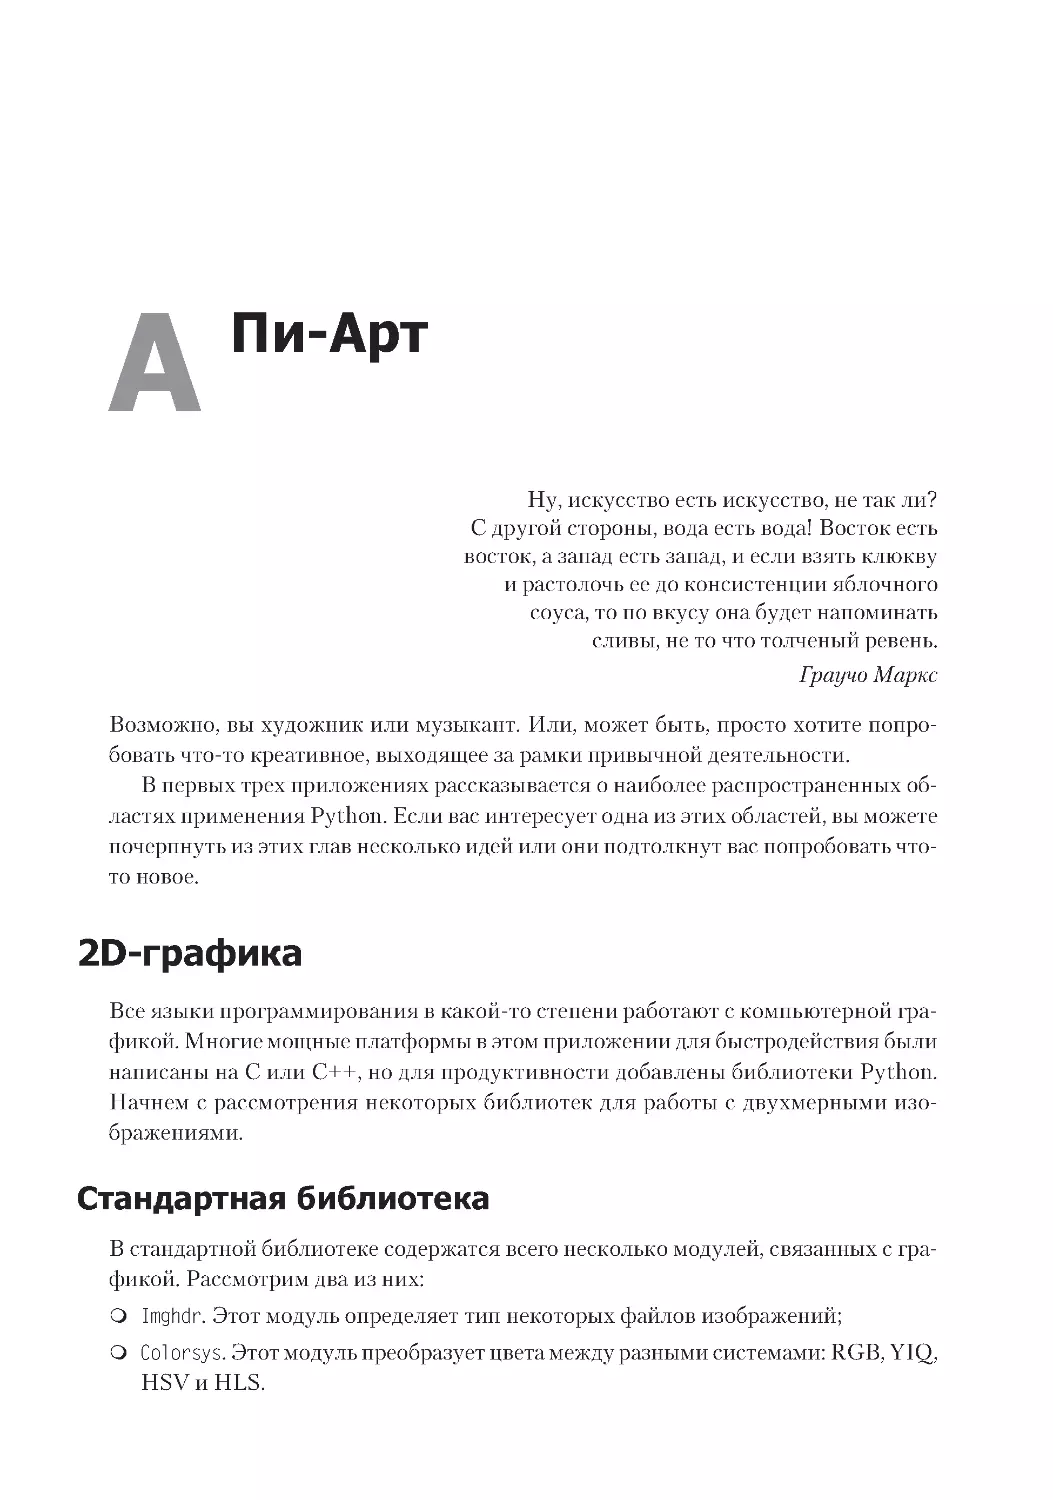 Приложение А. Пи-Арт
2D-графика
Стандартная библиотека